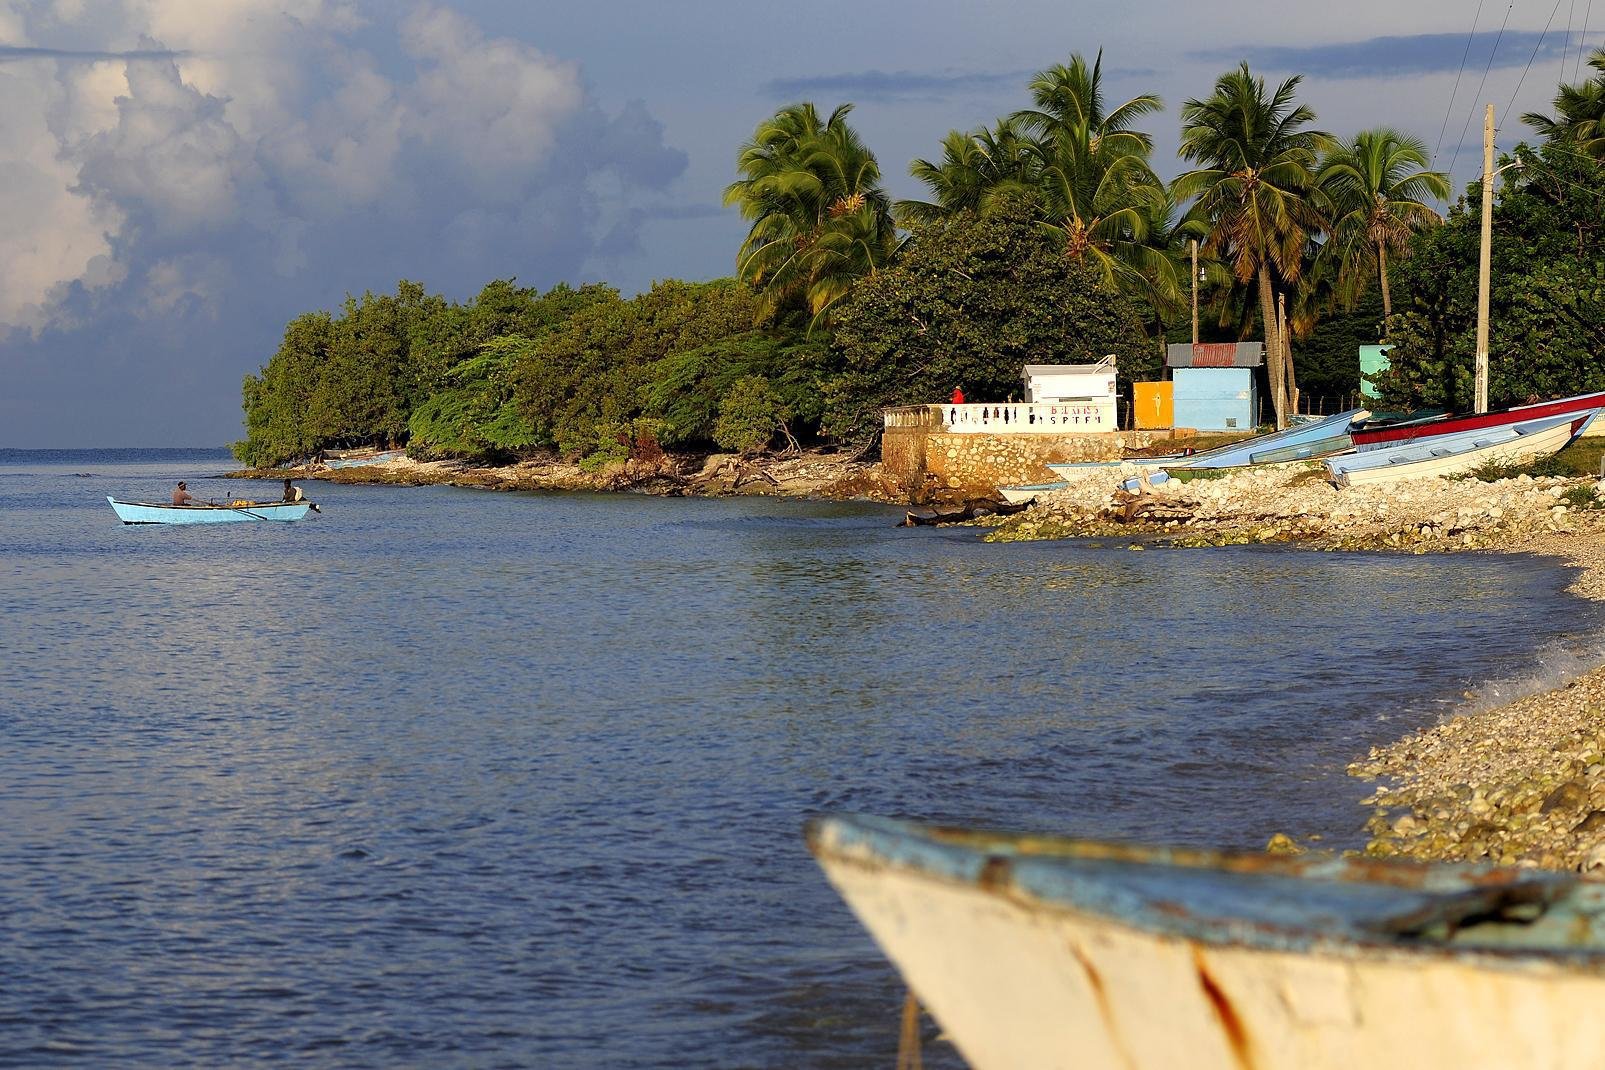 Situé à l'extrême sud-ouest du pays, à la frontière avec Haïti, Pedernales est un charmant village de pêcheurs, à 119 km de Barahona et 319 km de la capitale Saint-Domingue. Un pont piéton traverse la rivière marquant la frontière pour se rendre à Anse à Pitres, à Haïti. Proposant quelques hôtels bon marché, mais au confort un peu sommaire, cette petite ville aux airs de Far West est le point de départ ...